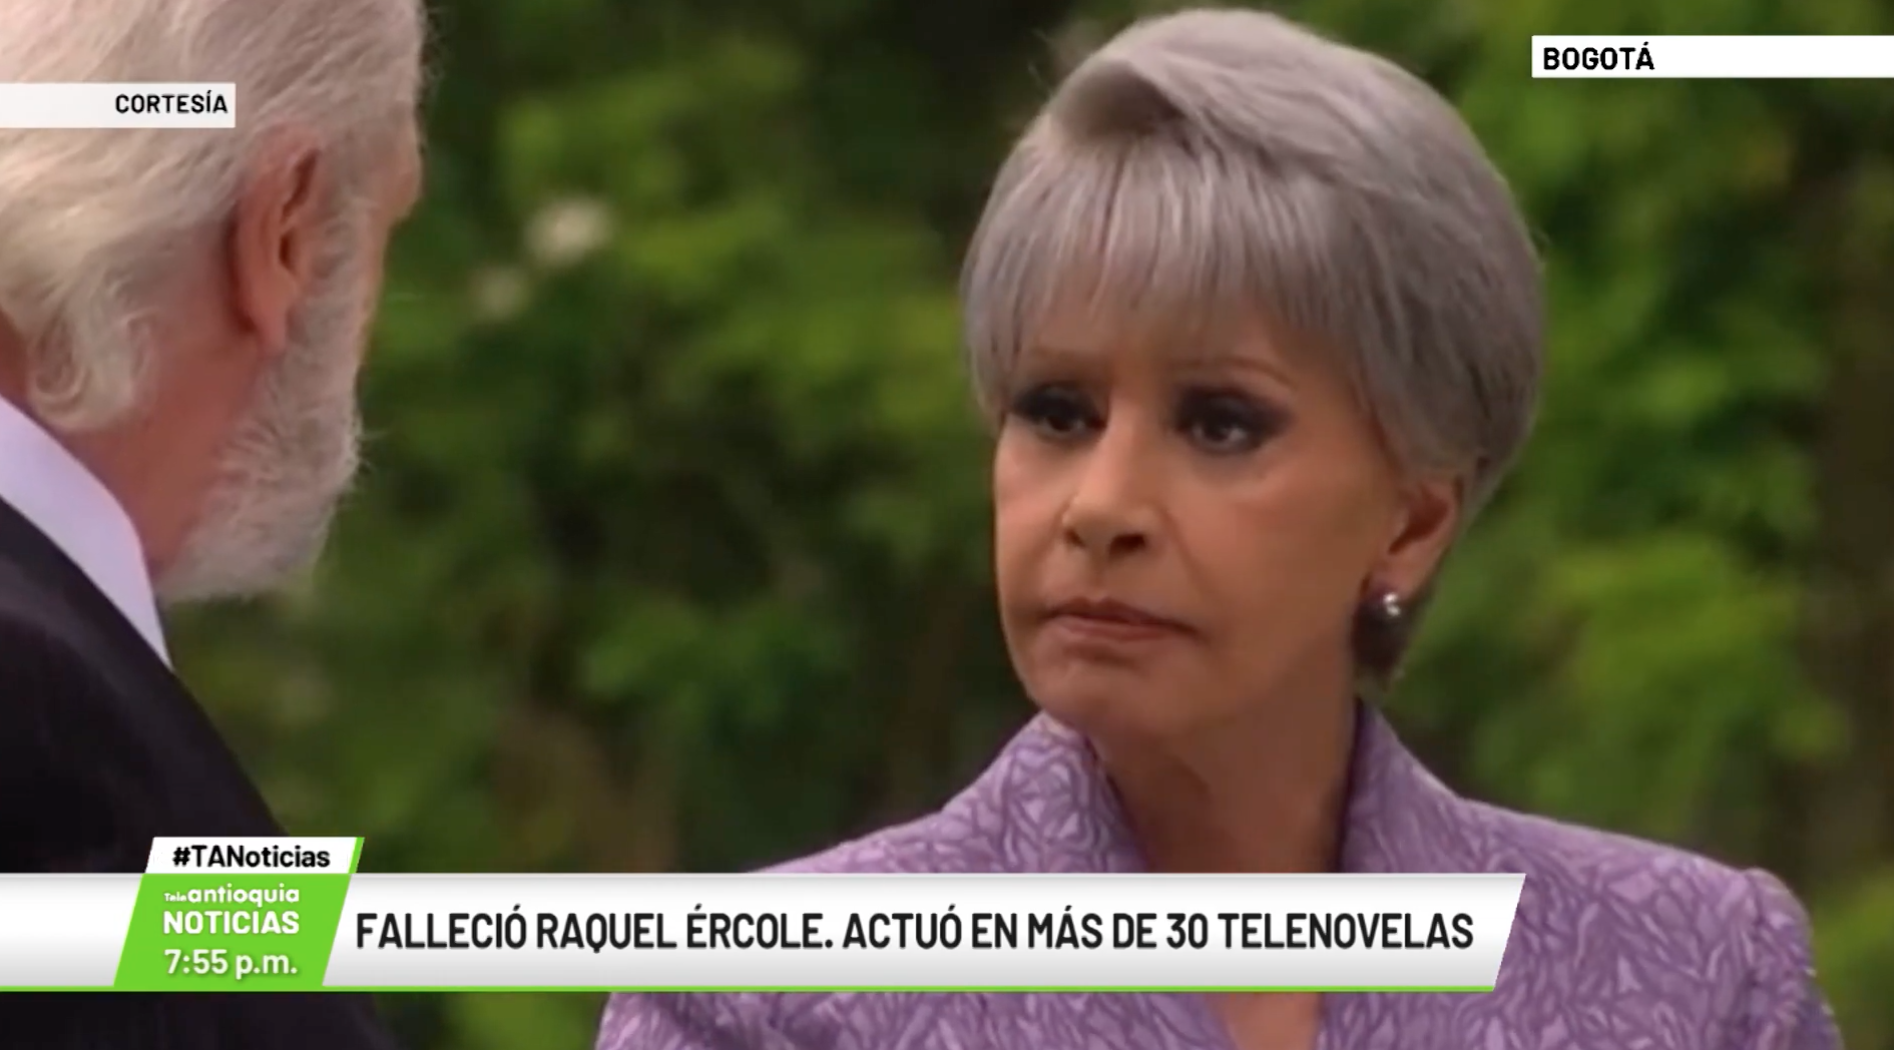 Falleció Raquel Èrcole.  Actuó en más de 30 telenovelas